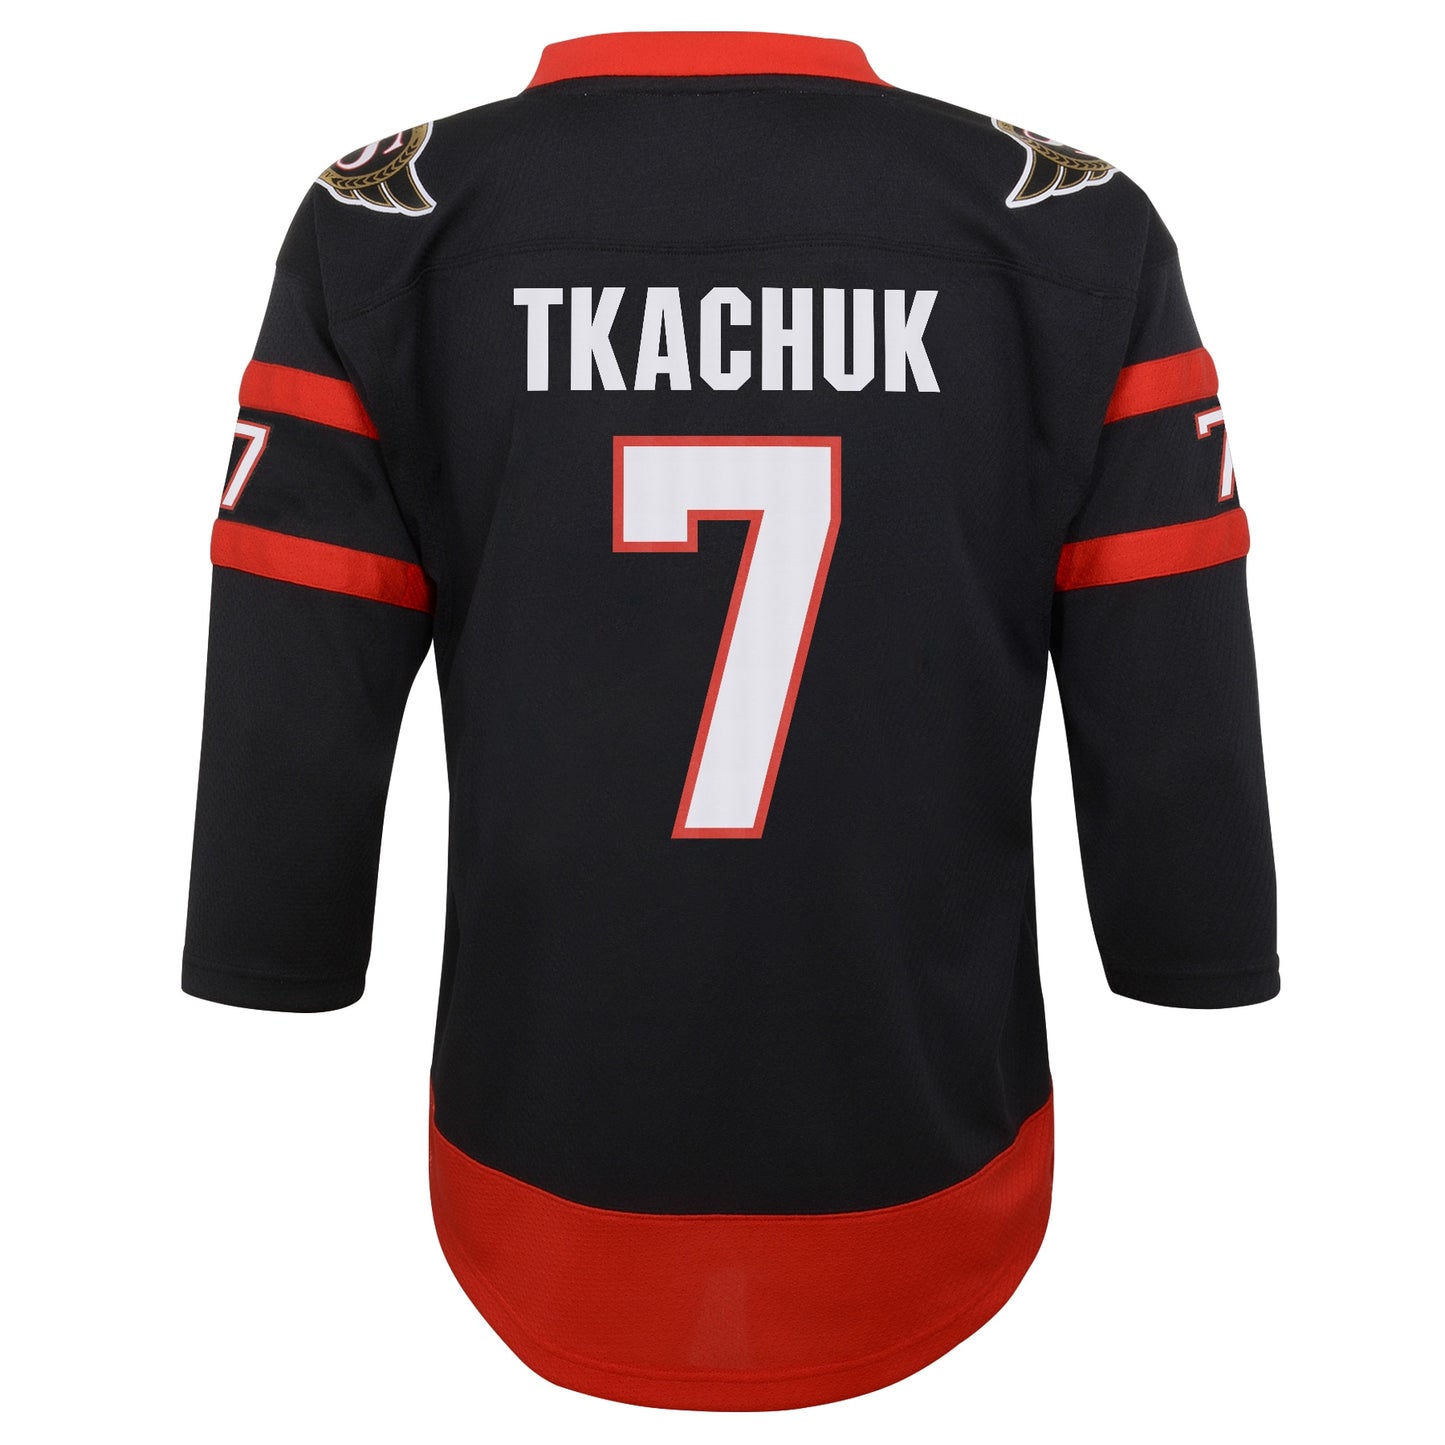 Brady Tkachuk Ottawa Senators Youth 2020/21 Home Replica Player Jersey - Black